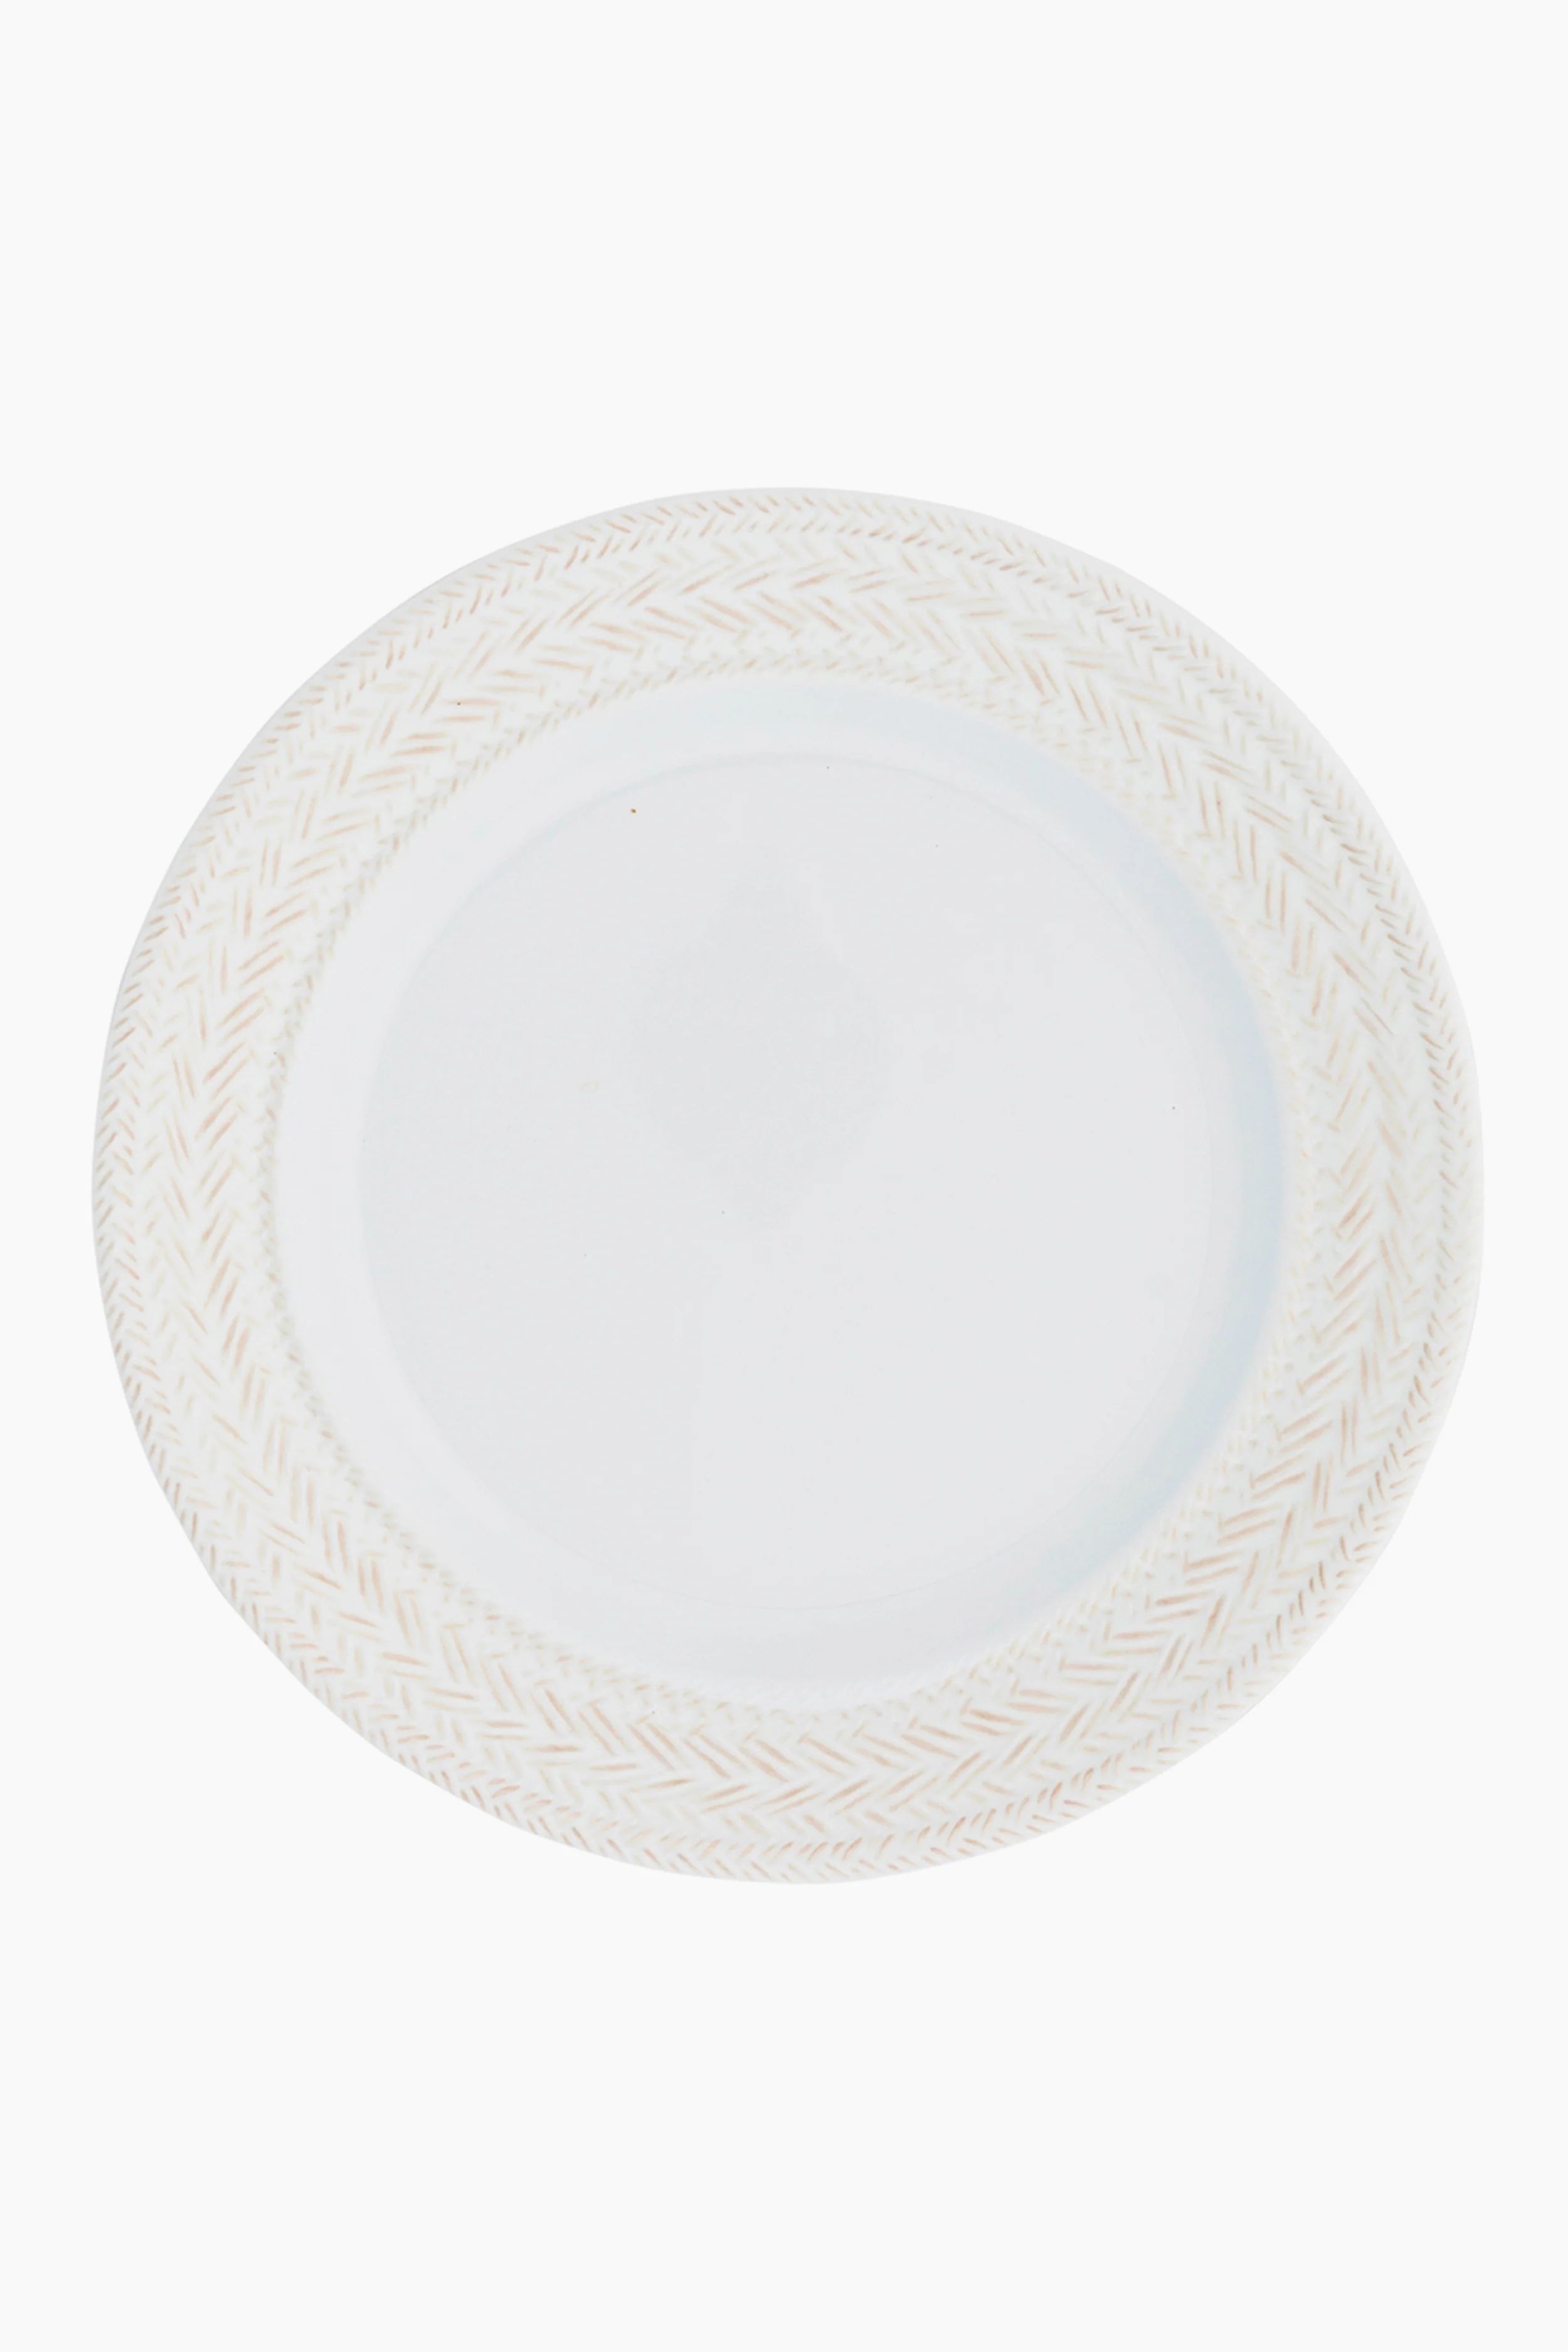 Le Panier White Melamine Dinner Plate | Tuckernuck (US)